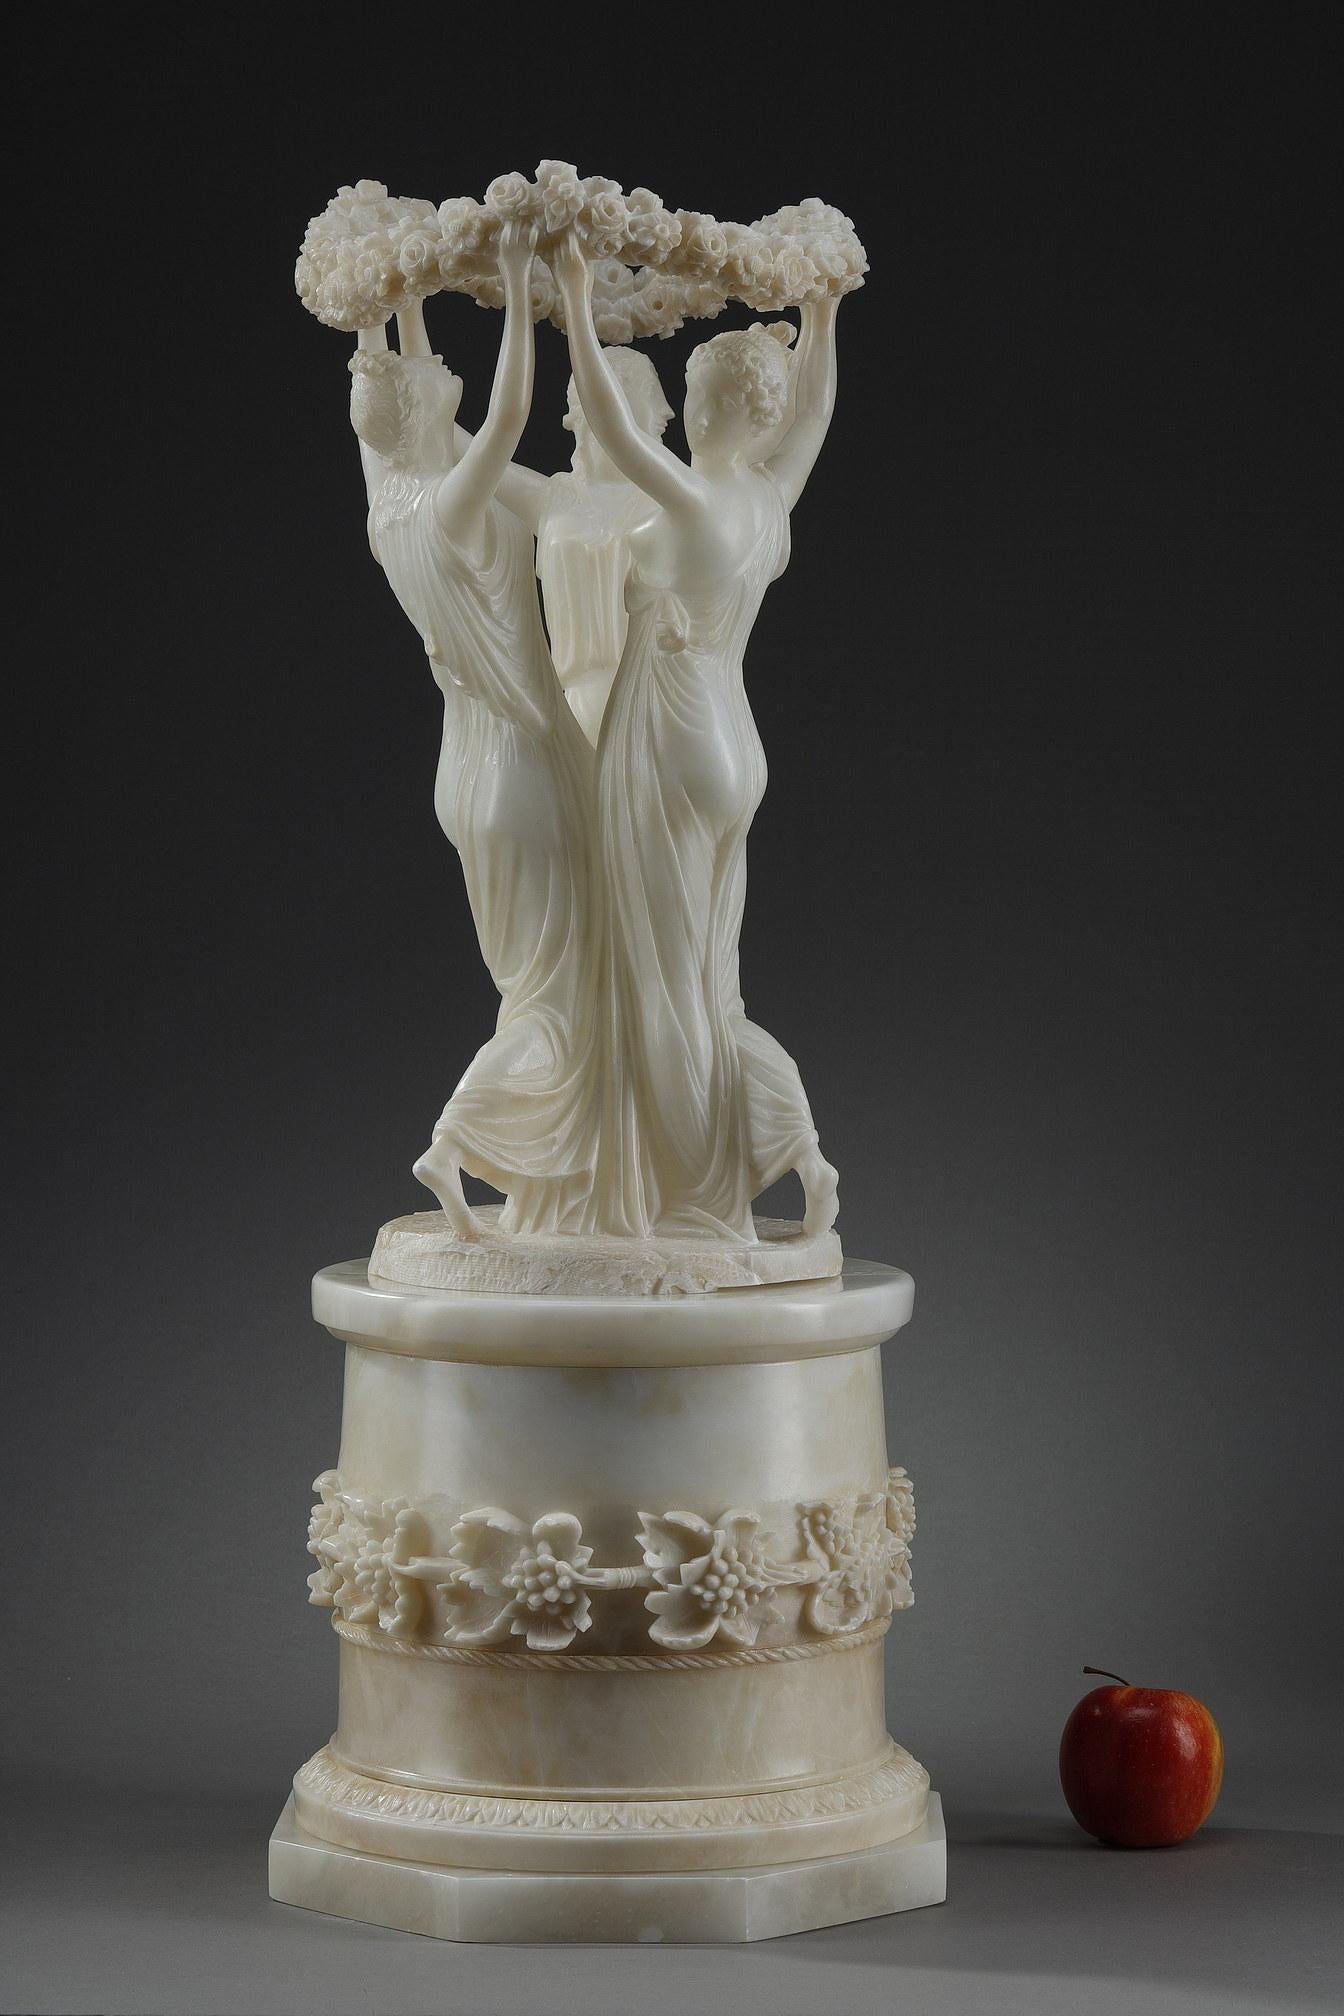 Alabasterskulptur, die die drei Grazien darstellt, die im Kreis tanzen und eine Blumenkrone halten. Die drei in griechische Tuniken gekleideten jungen Frauen werden auf individuelle Weise behandelt. Sie stehen auf einem hohen zylindrischen Sockel,